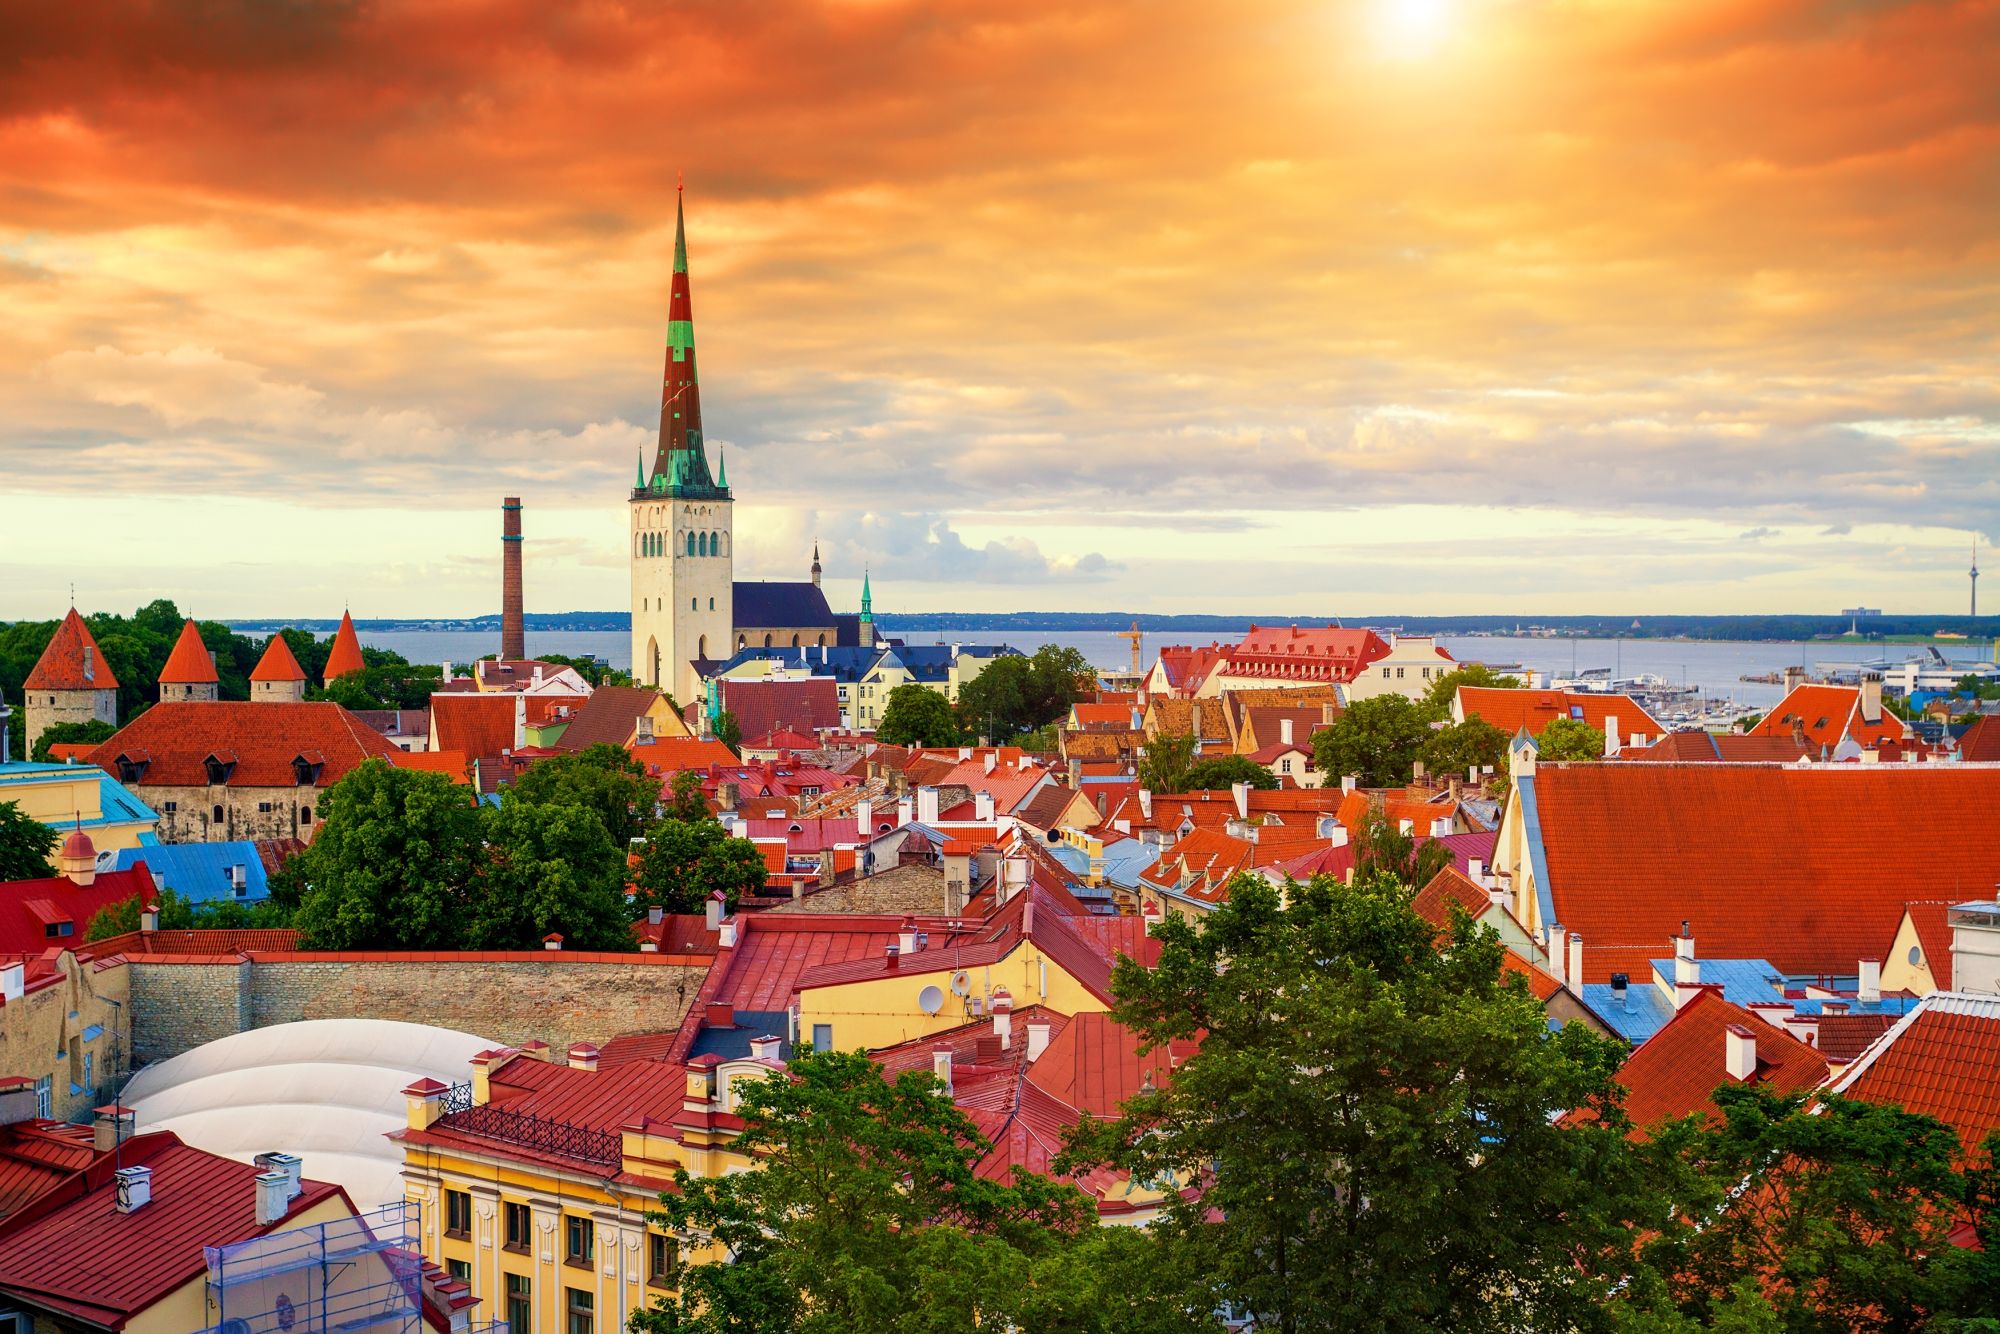 Alojamiento países bálticos: Dónde dormir en Vilnius, Riga y Tallin